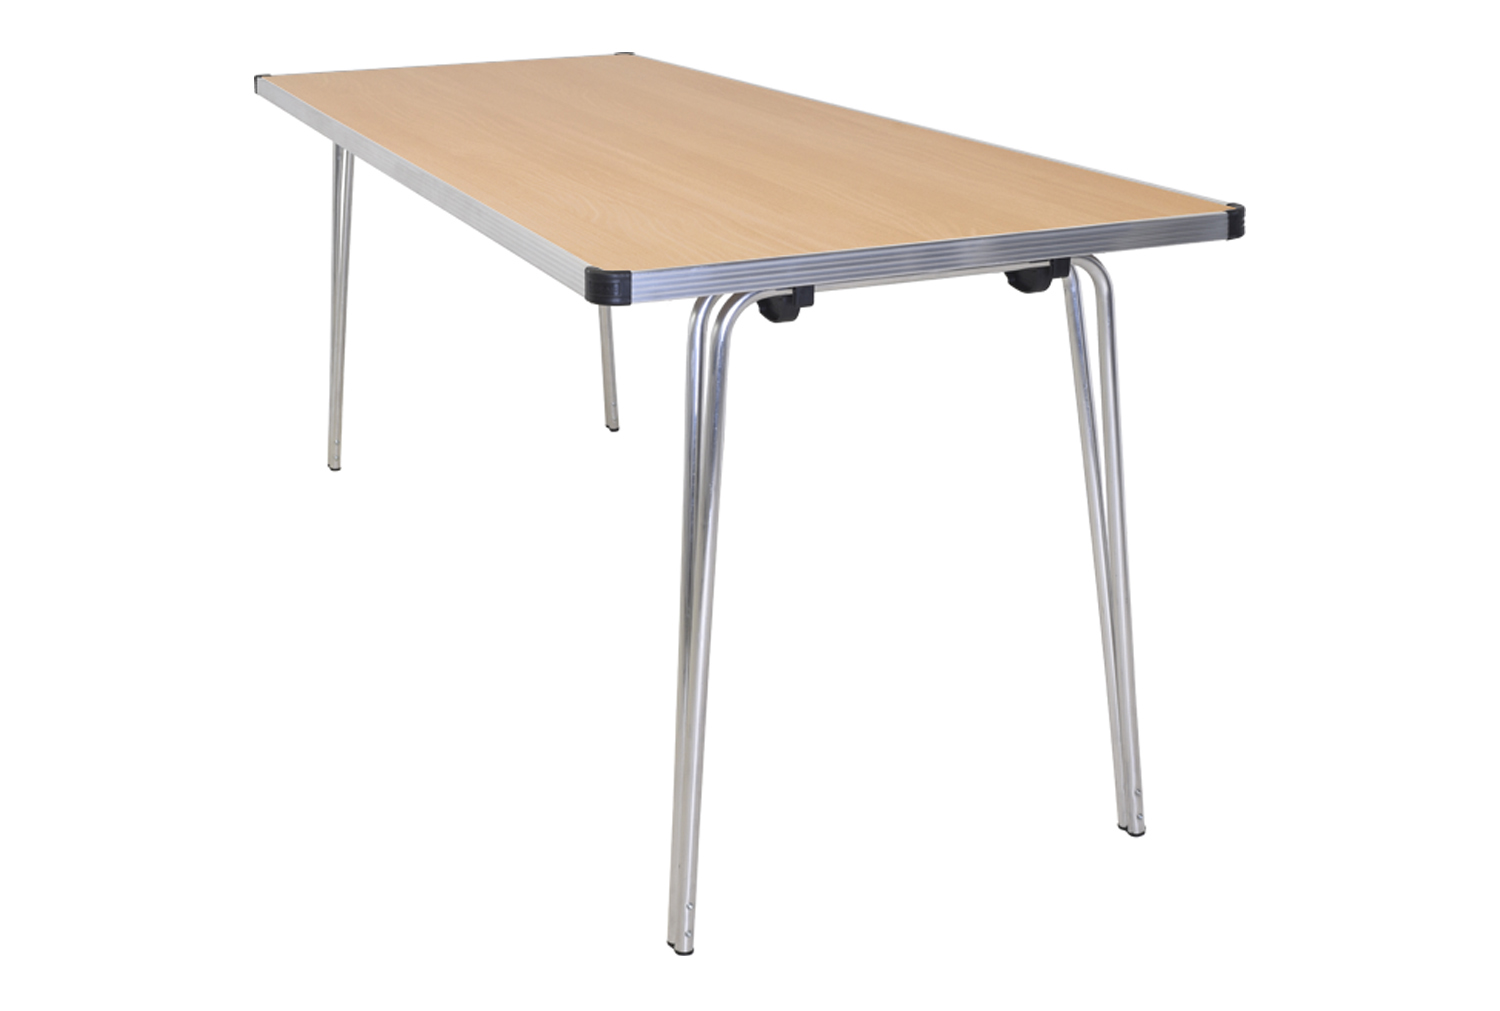 Gopak Contour Plus Folding Table, 183wx76d (cm), Beech